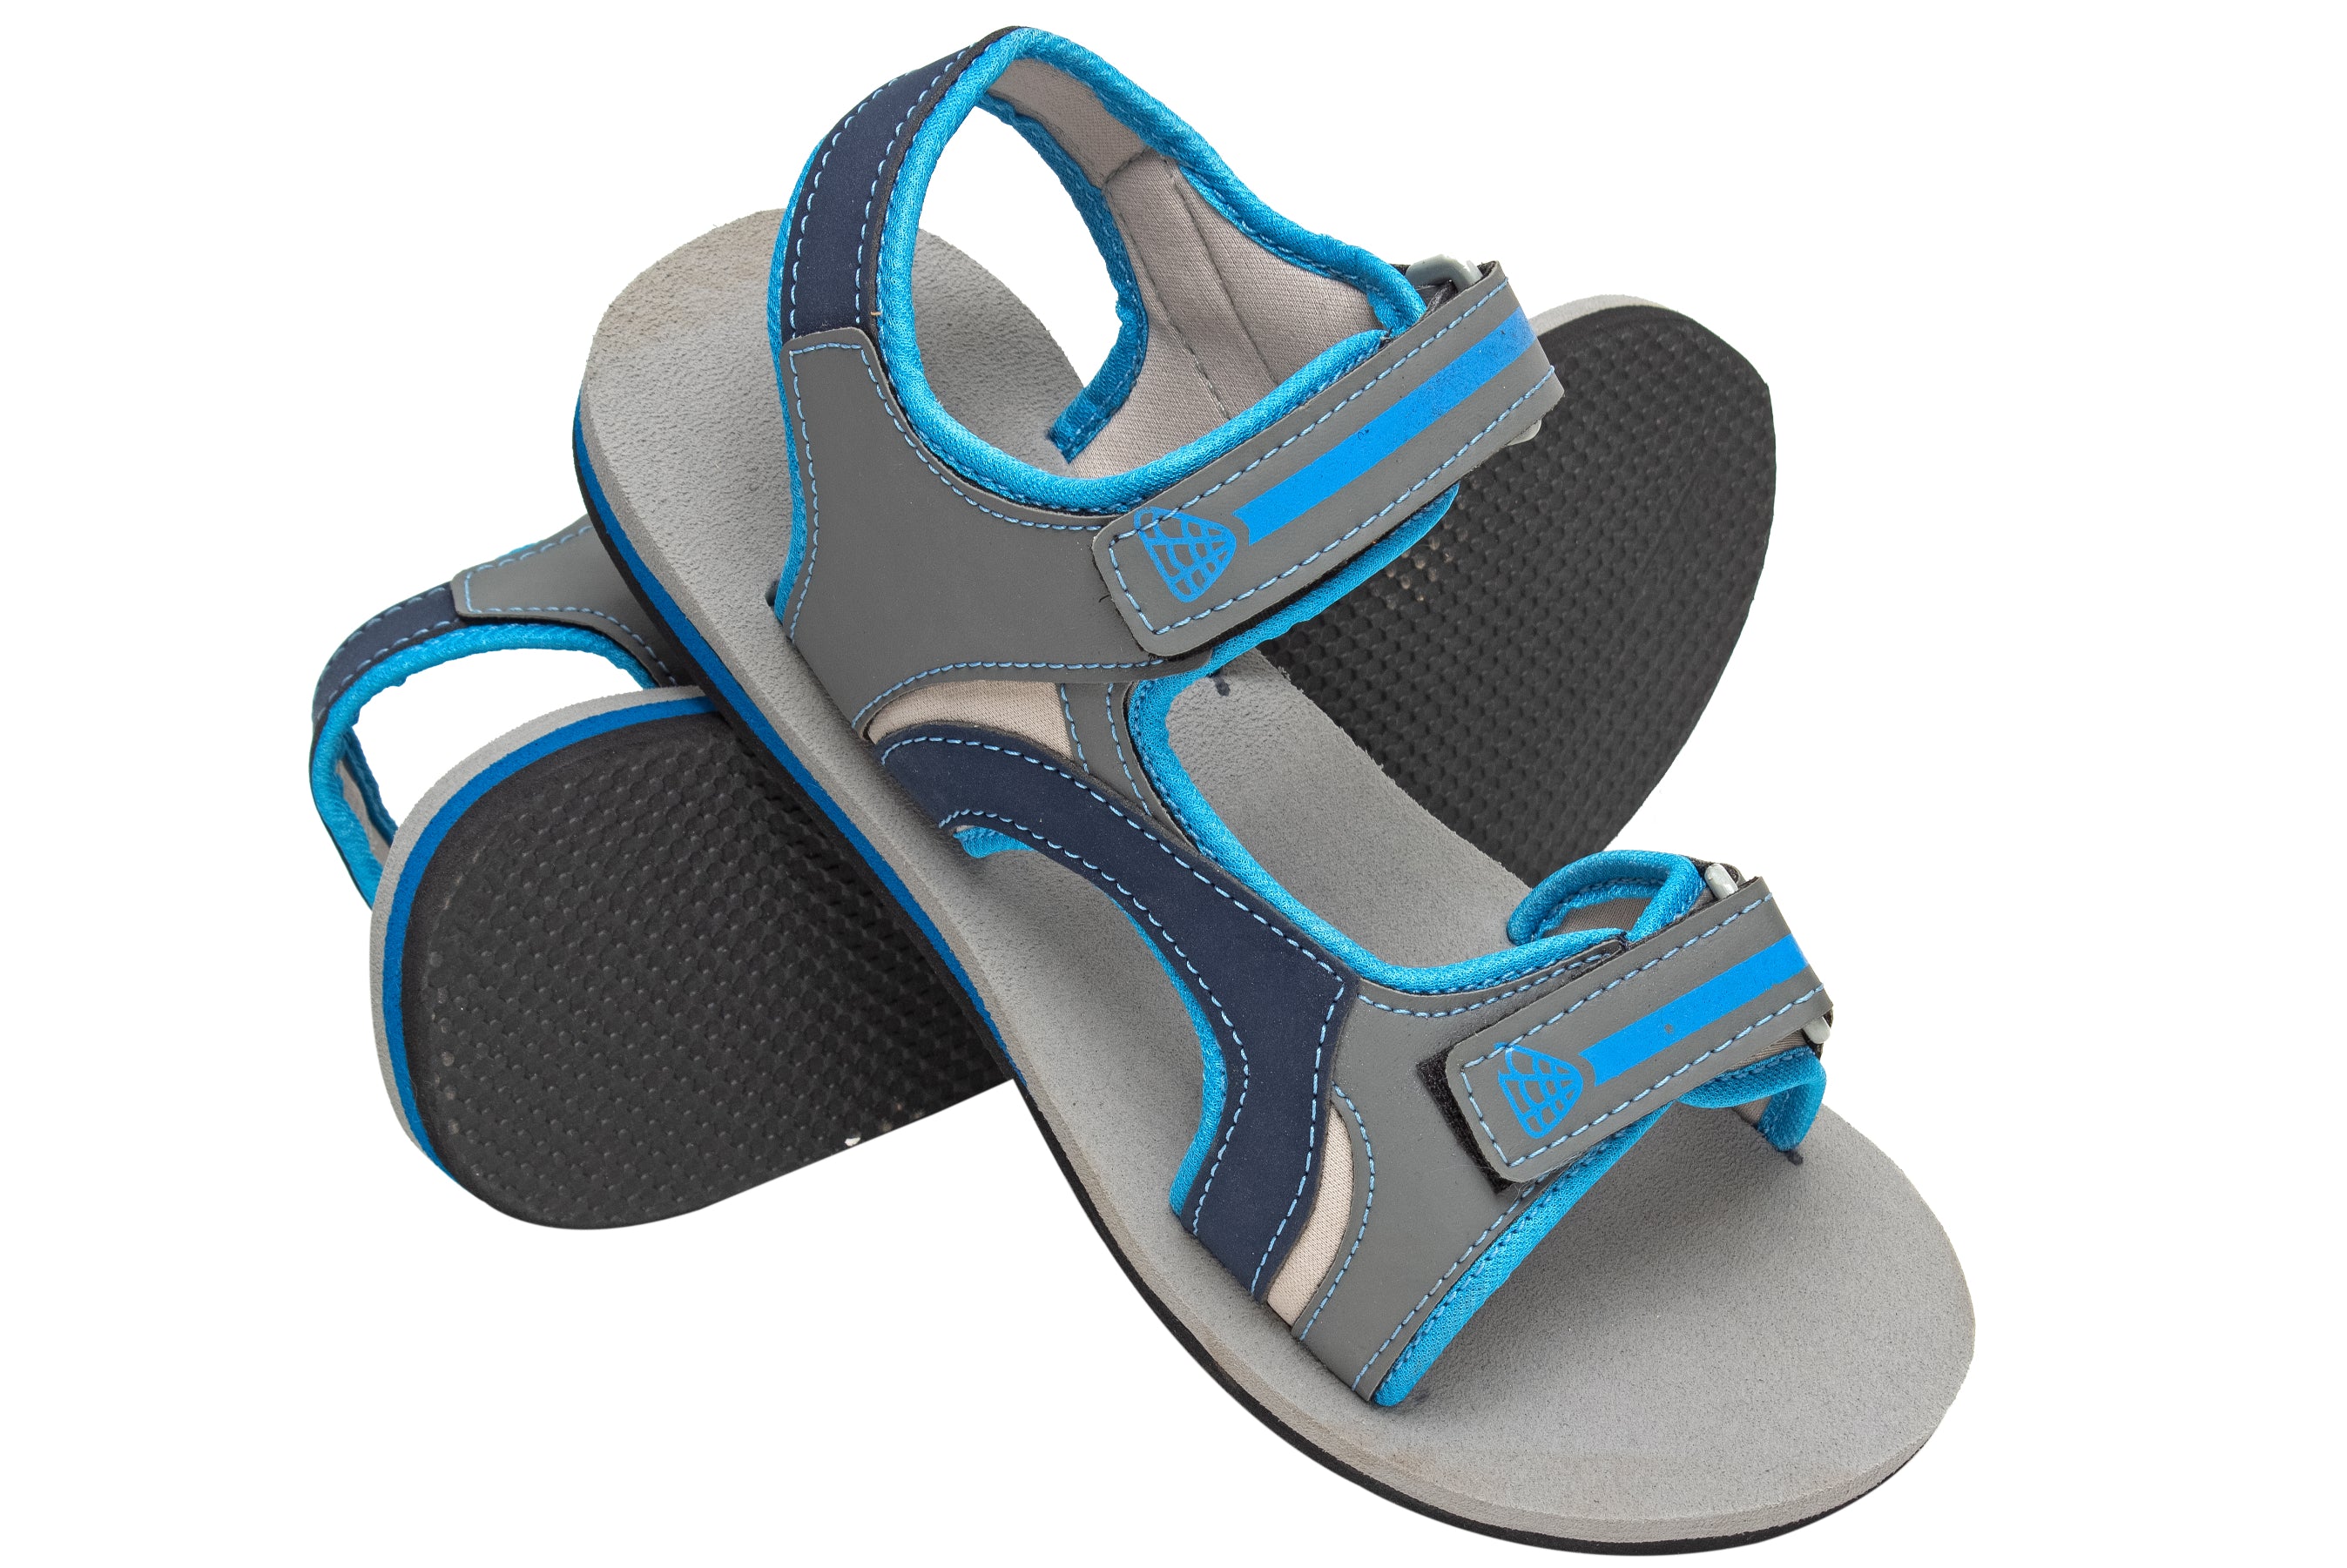 Buy Sandals for women SS 572 - Sandals Slippers for Women | Relaxo